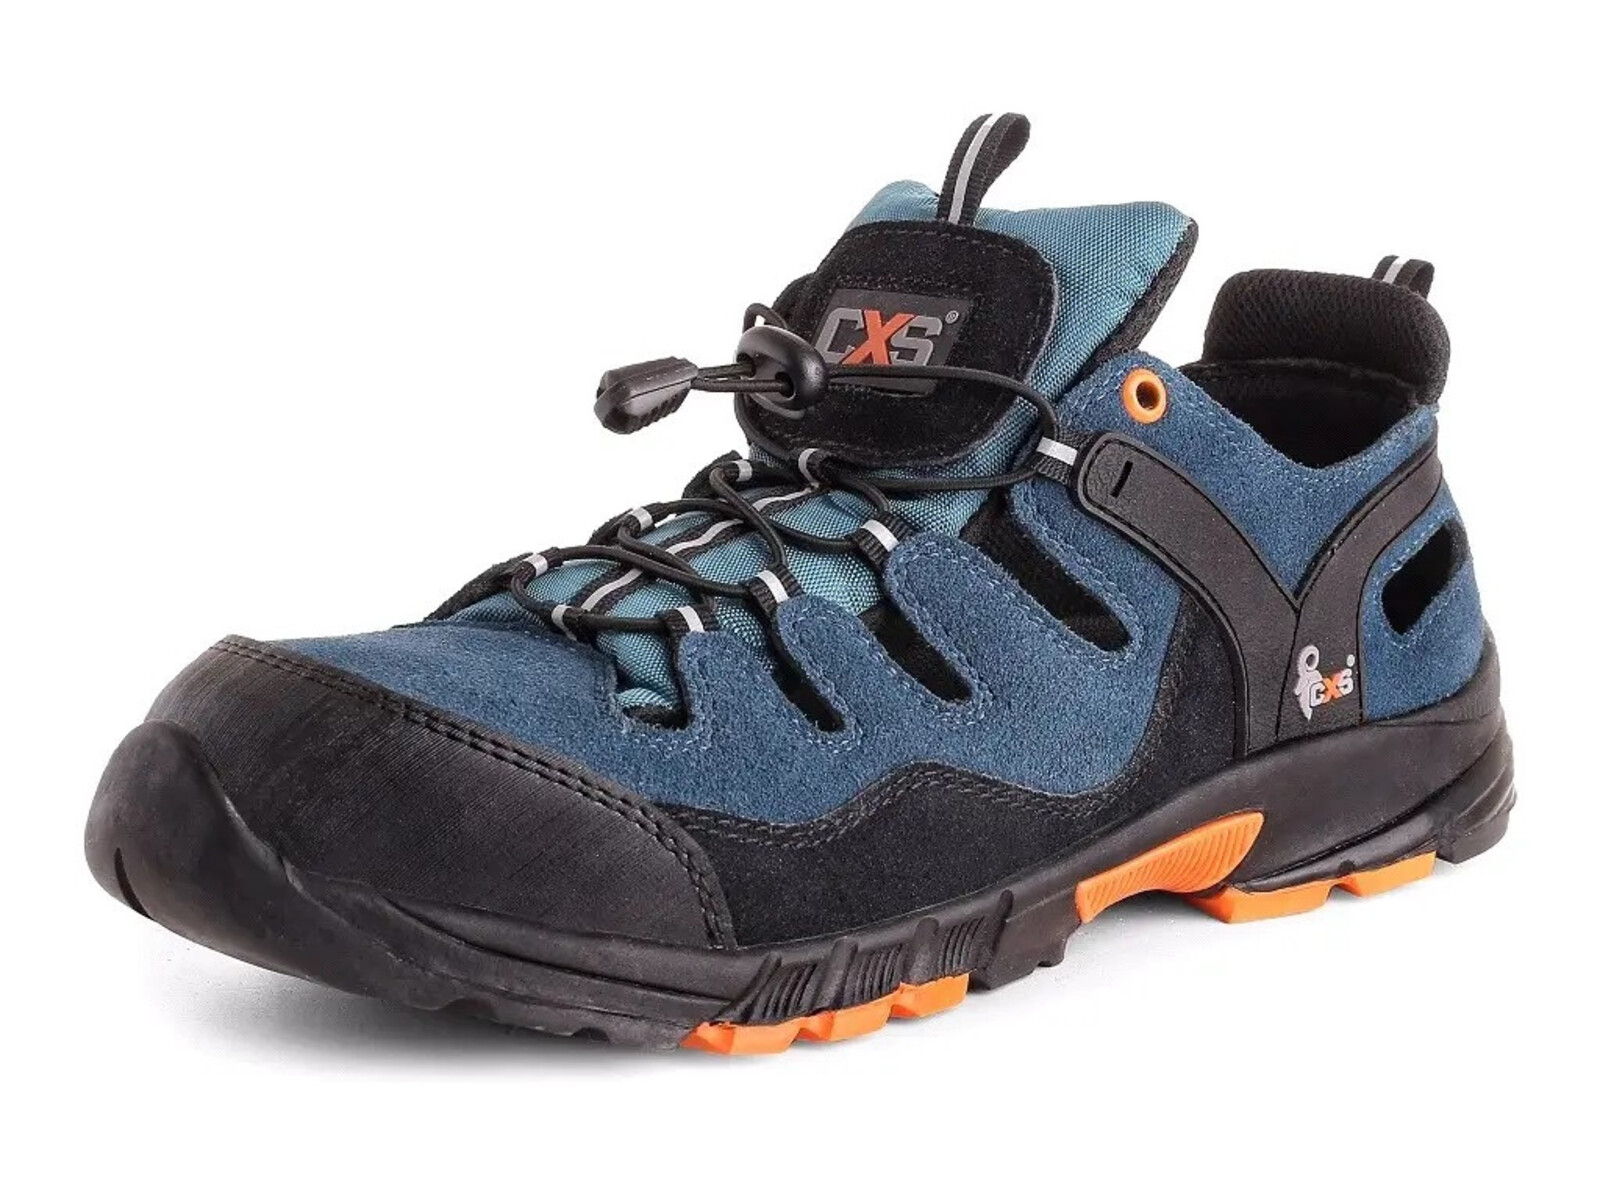 Bezpečnostné sandále CXS Land Cabrera S1 SRC - veľkosť: 42, farba: modrá/oranžová